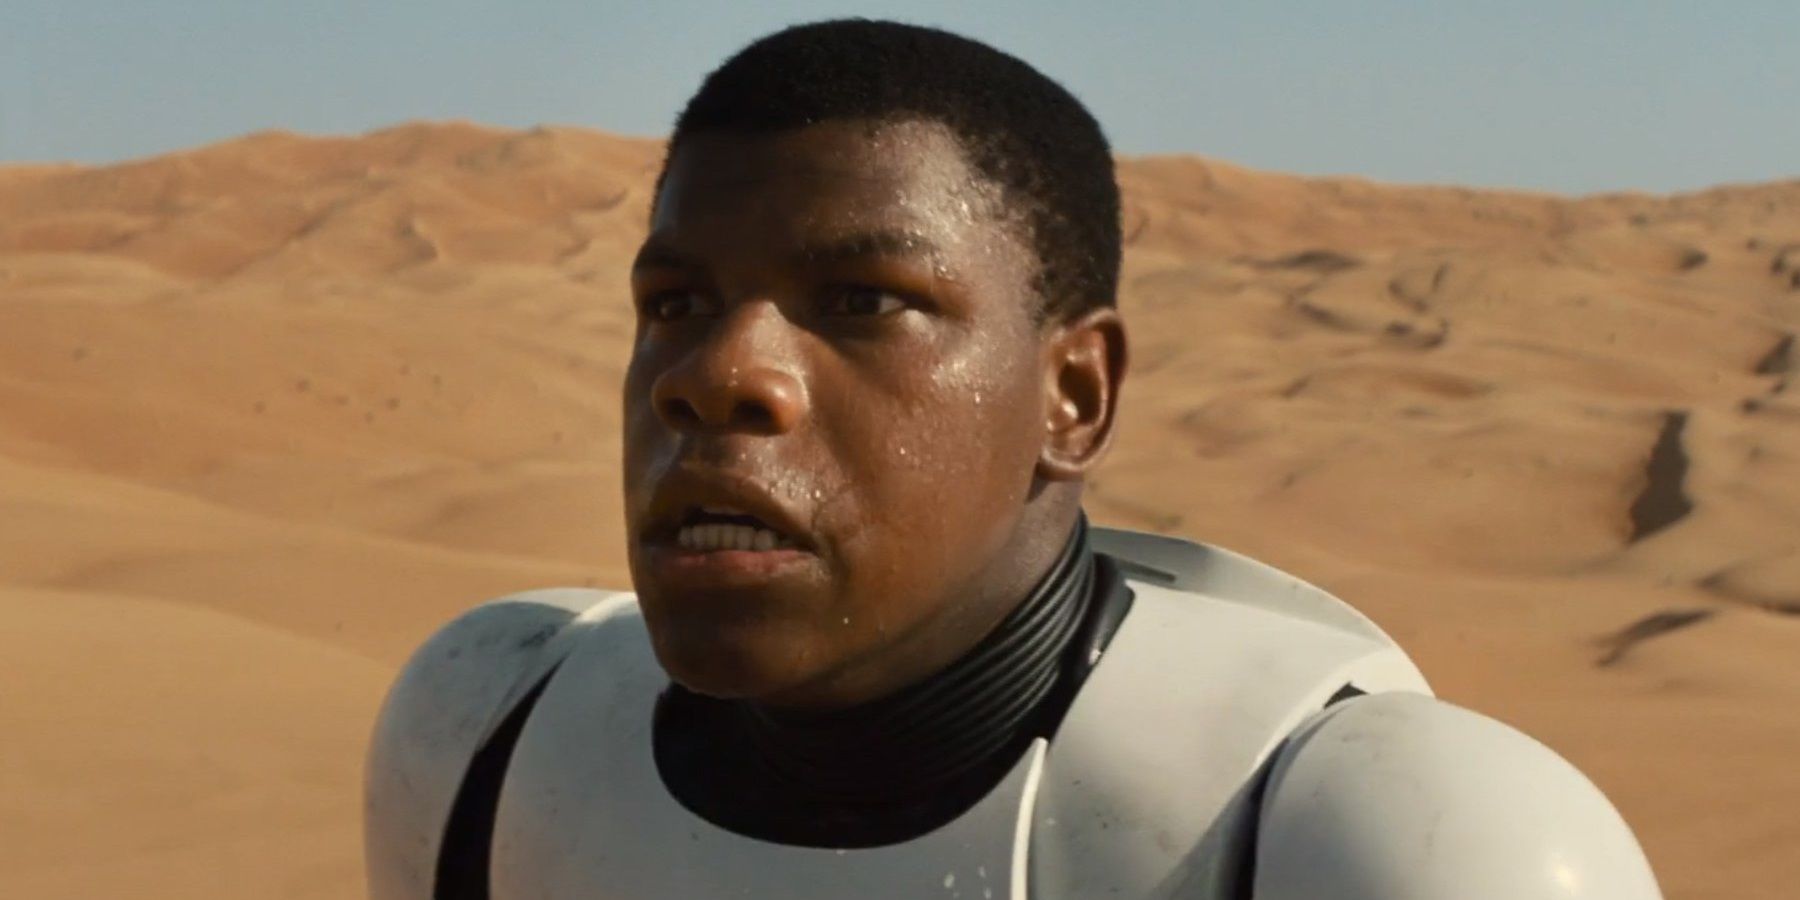 John Boyega in Star Wars The Force Awakens